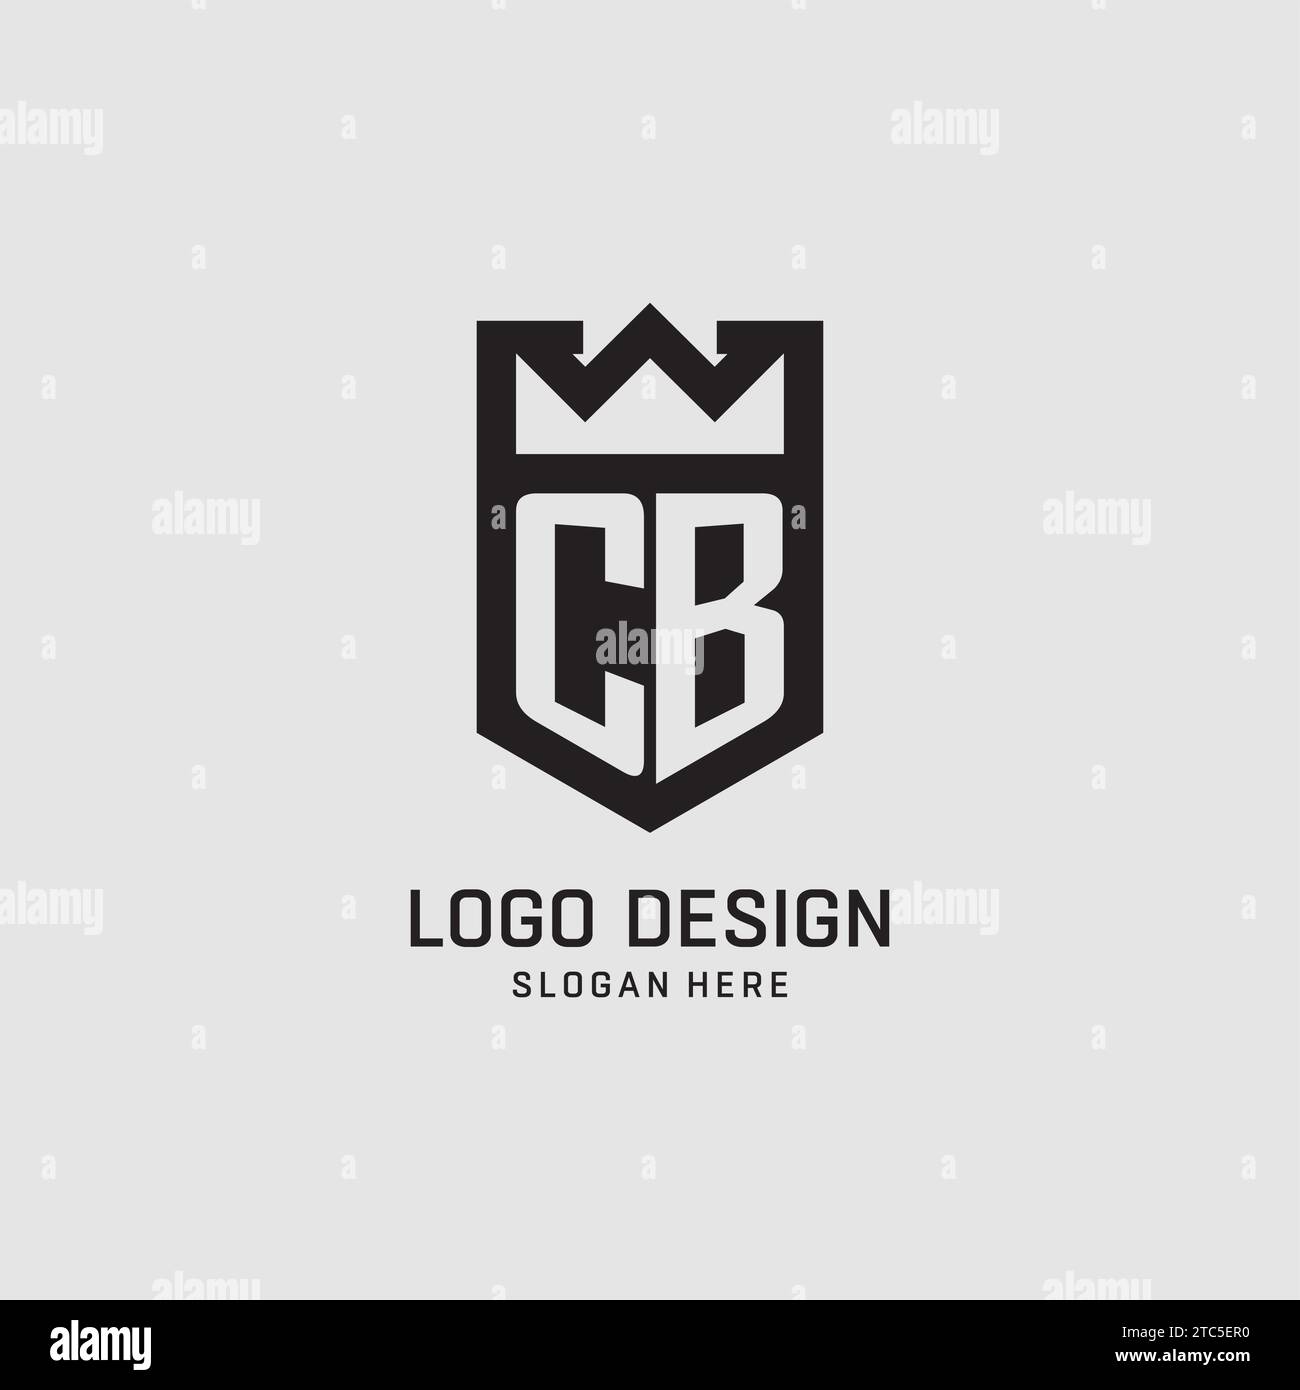 Initial CB logo shield shape, creative esport logo design vector graphic Stock Vector